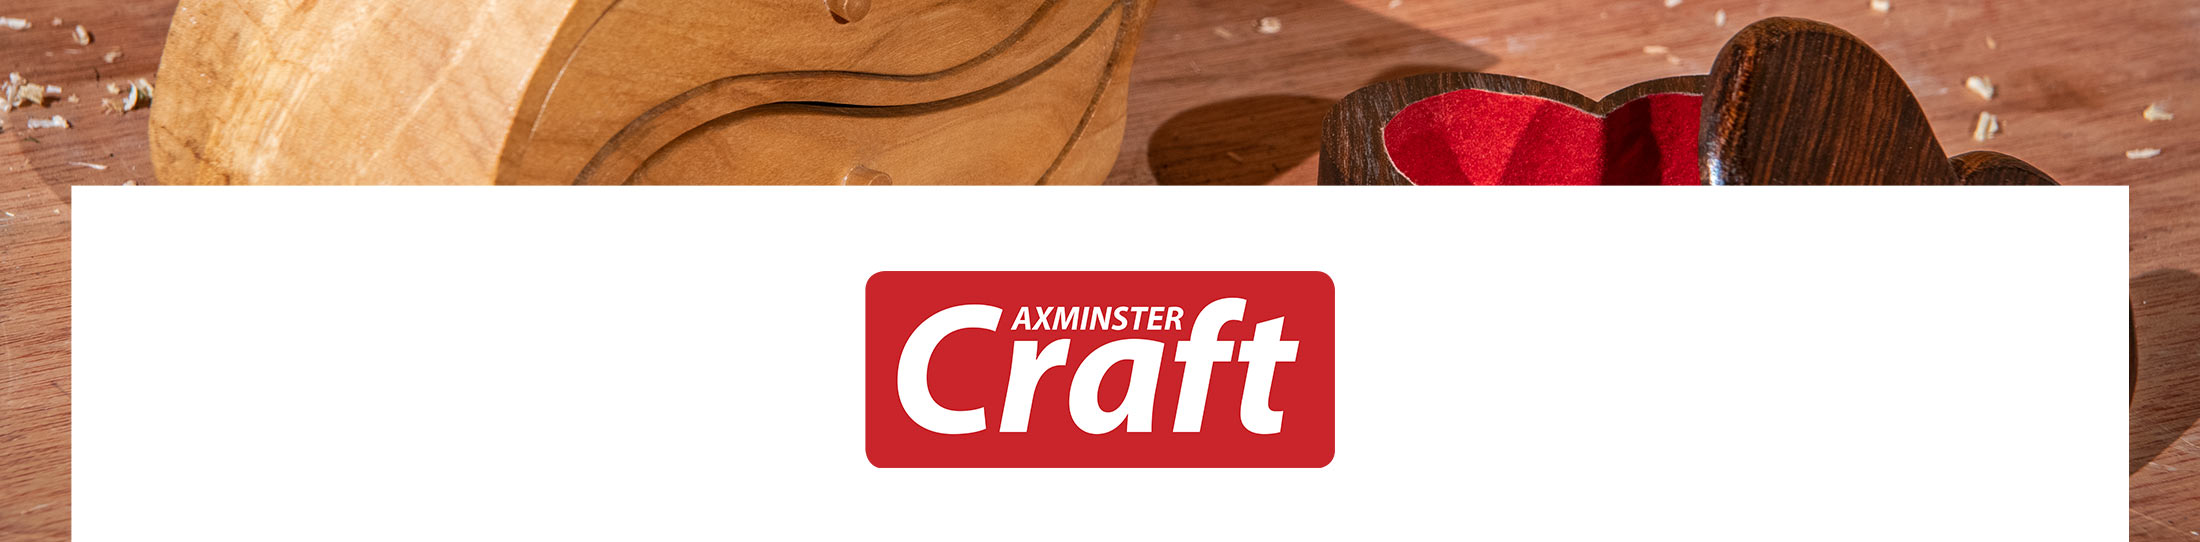 Axminster Craft